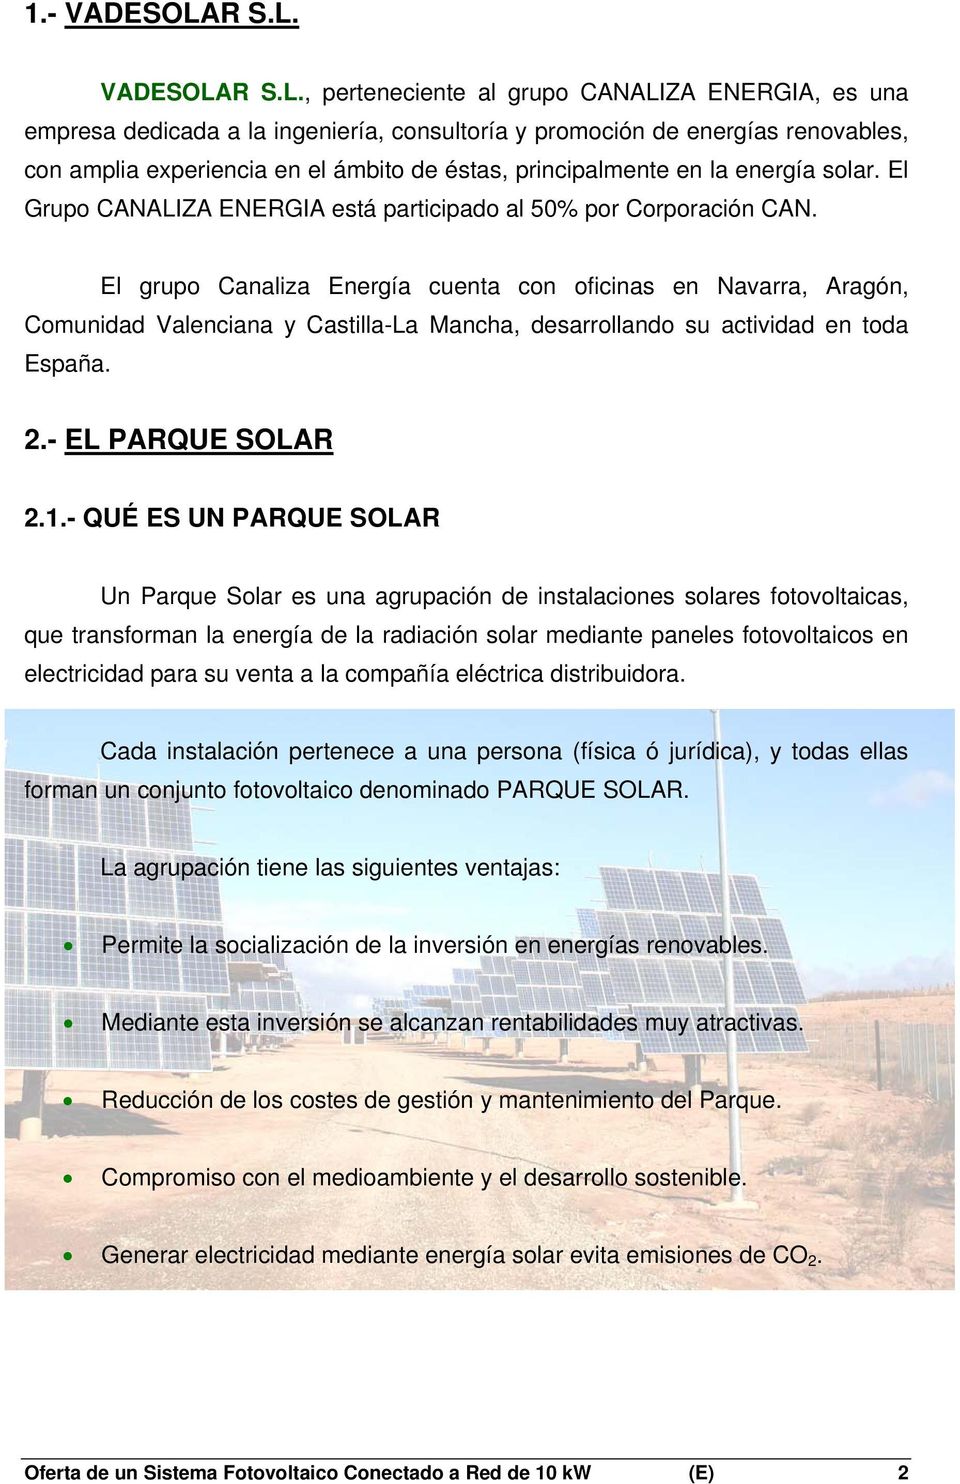 VADESOLA, perteneciente al grupo CANALIZA ENERGIA, es una empresa dedicada a la ingeniería, consultoría y promoción de energías renovables, con amplia experiencia en el ámbito de éstas,